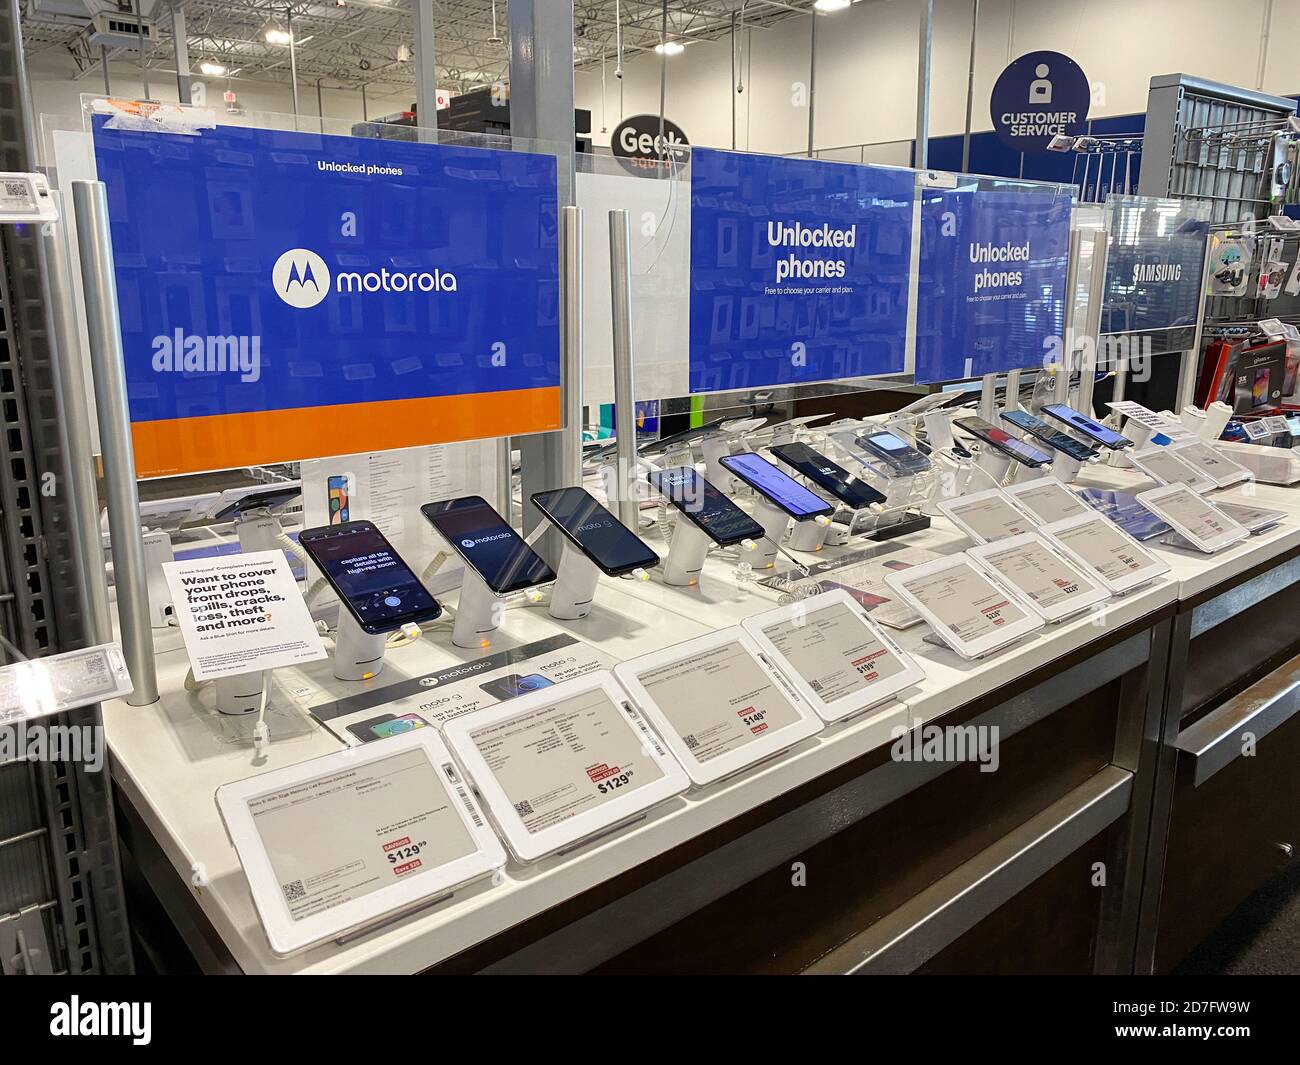 Orlando,FL/USA - 10/14/20: Gli ultimi telefoni cellulari in mostra al Best Buy di Orlando, Florida. Foto Stock